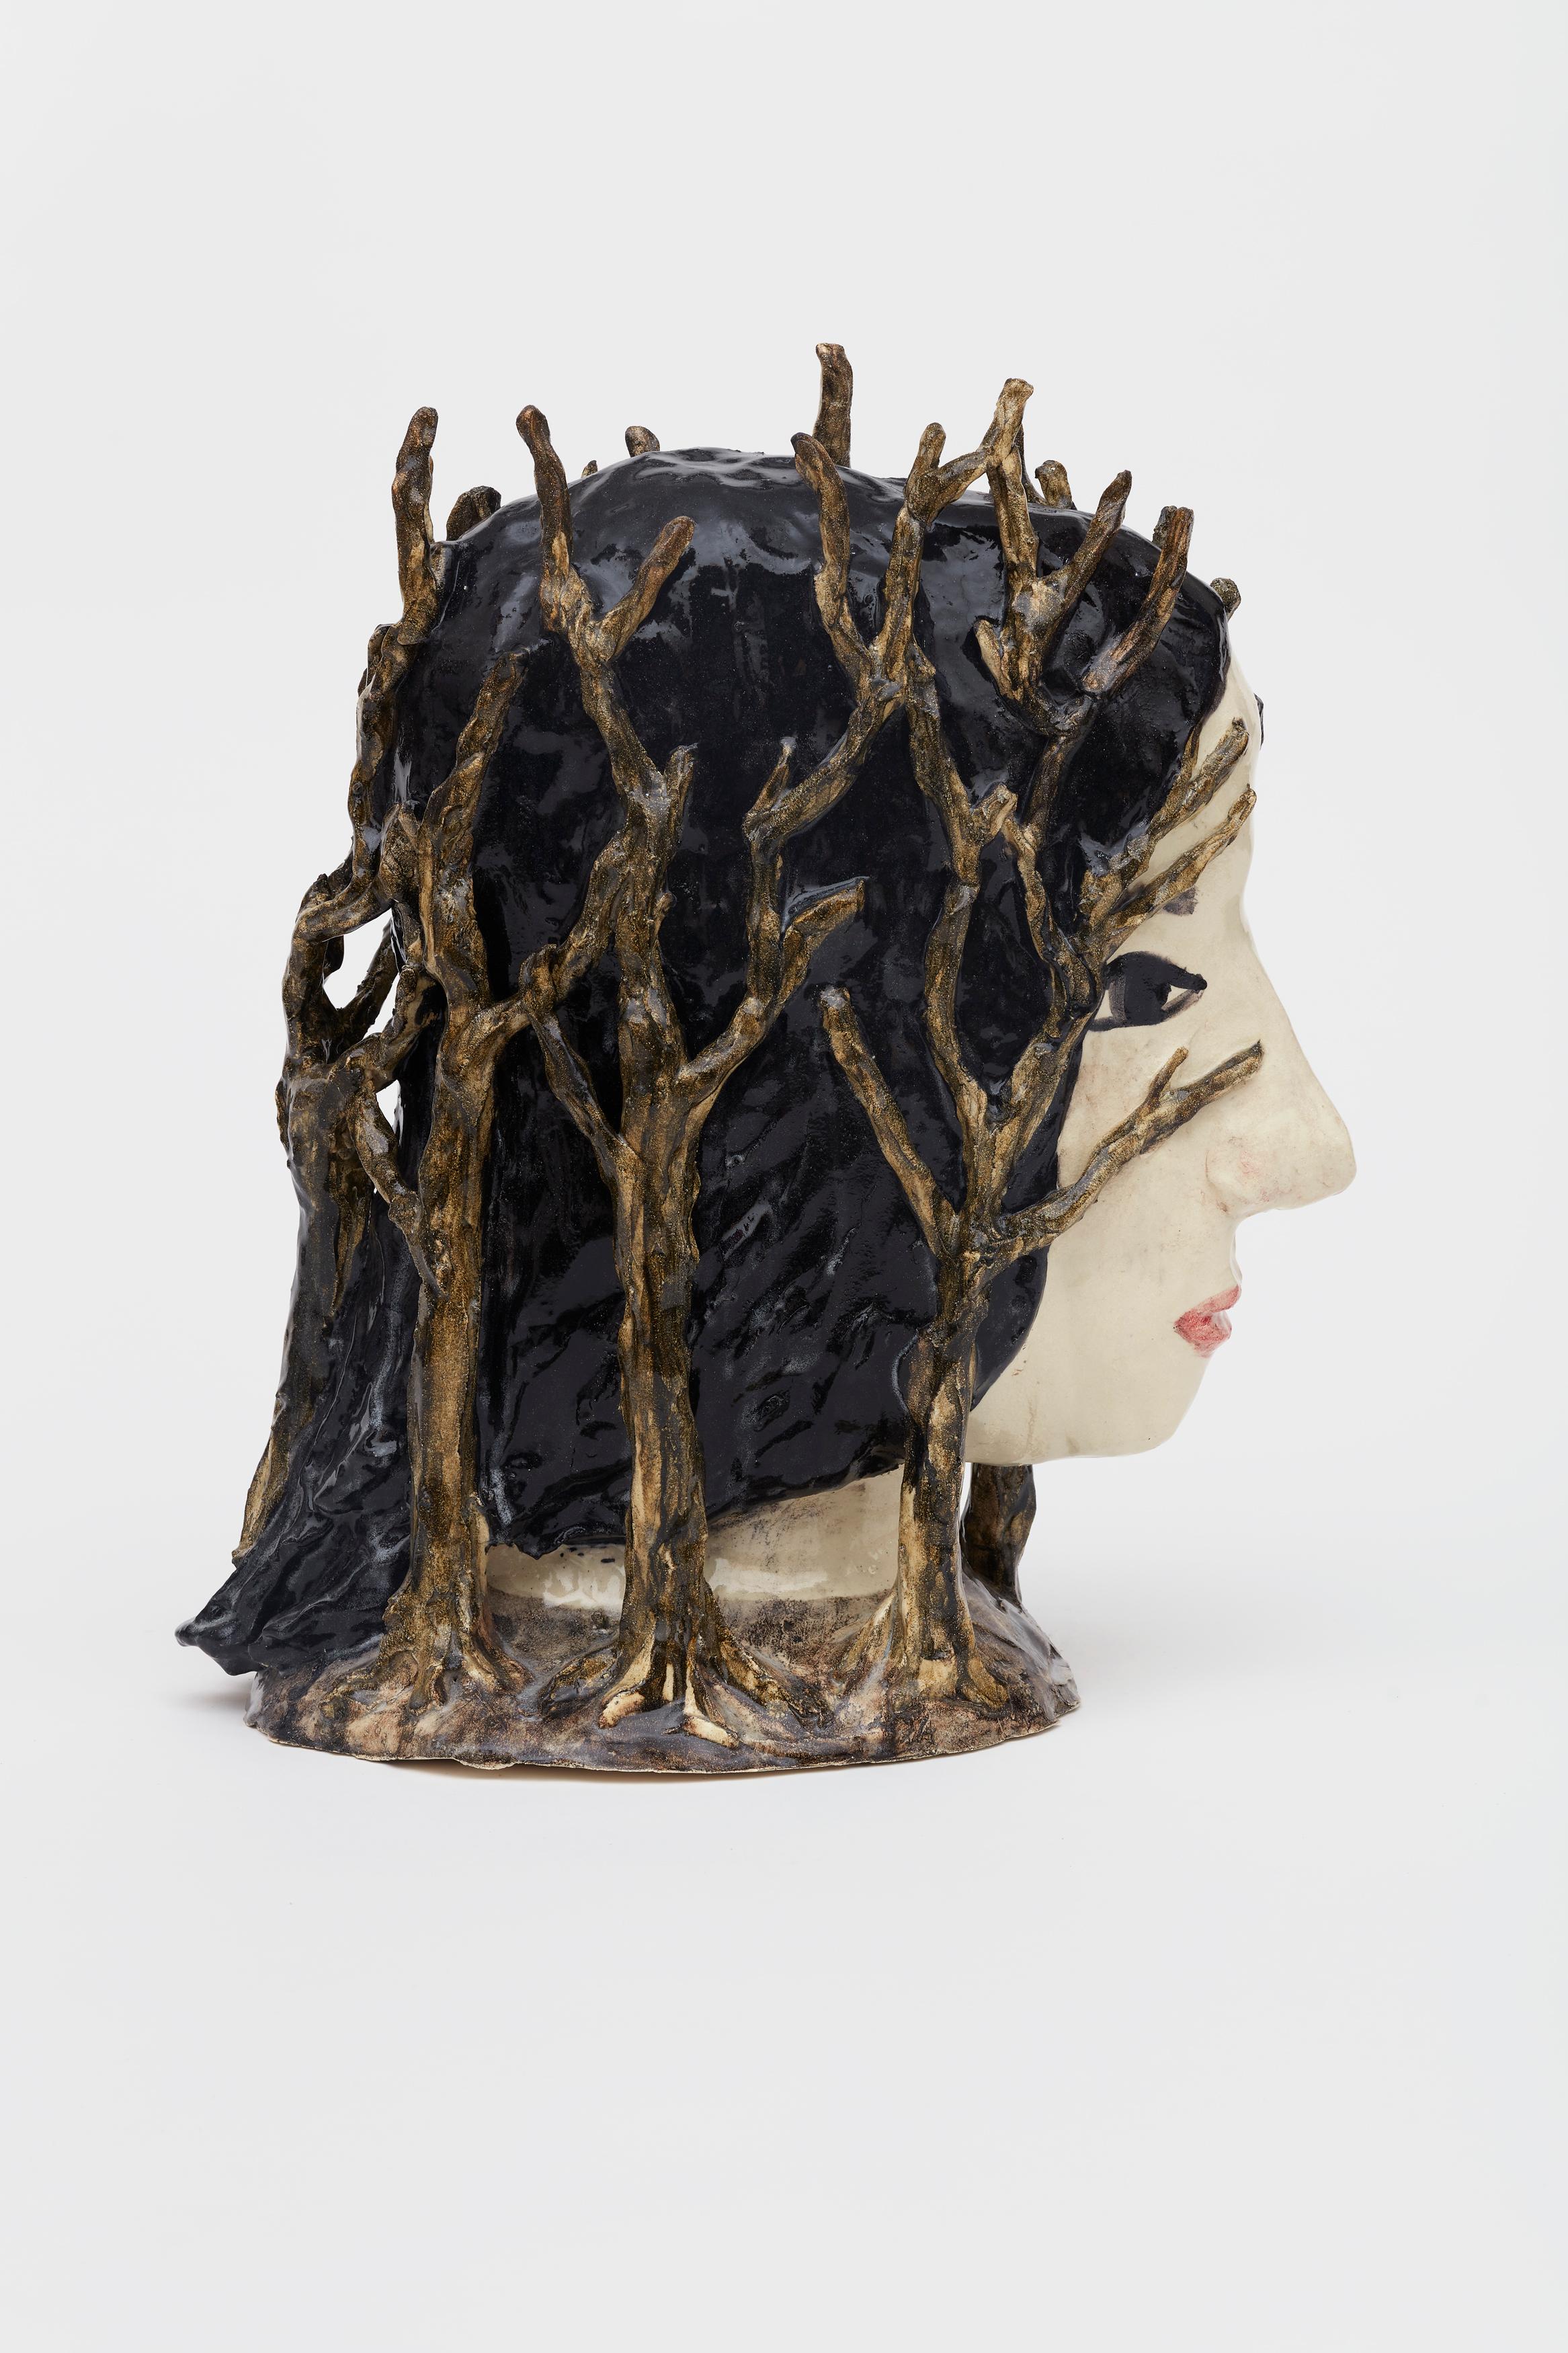 Kristalova ist vor allem für ihre figurativen Keramikskulpturen bekannt, die Aspekte des menschlichen Körpers und Elemente der Natur einbeziehen. In ihrem gesamten Werk untersucht sie den Übergang als eine für das menschliche und ökologische Leben